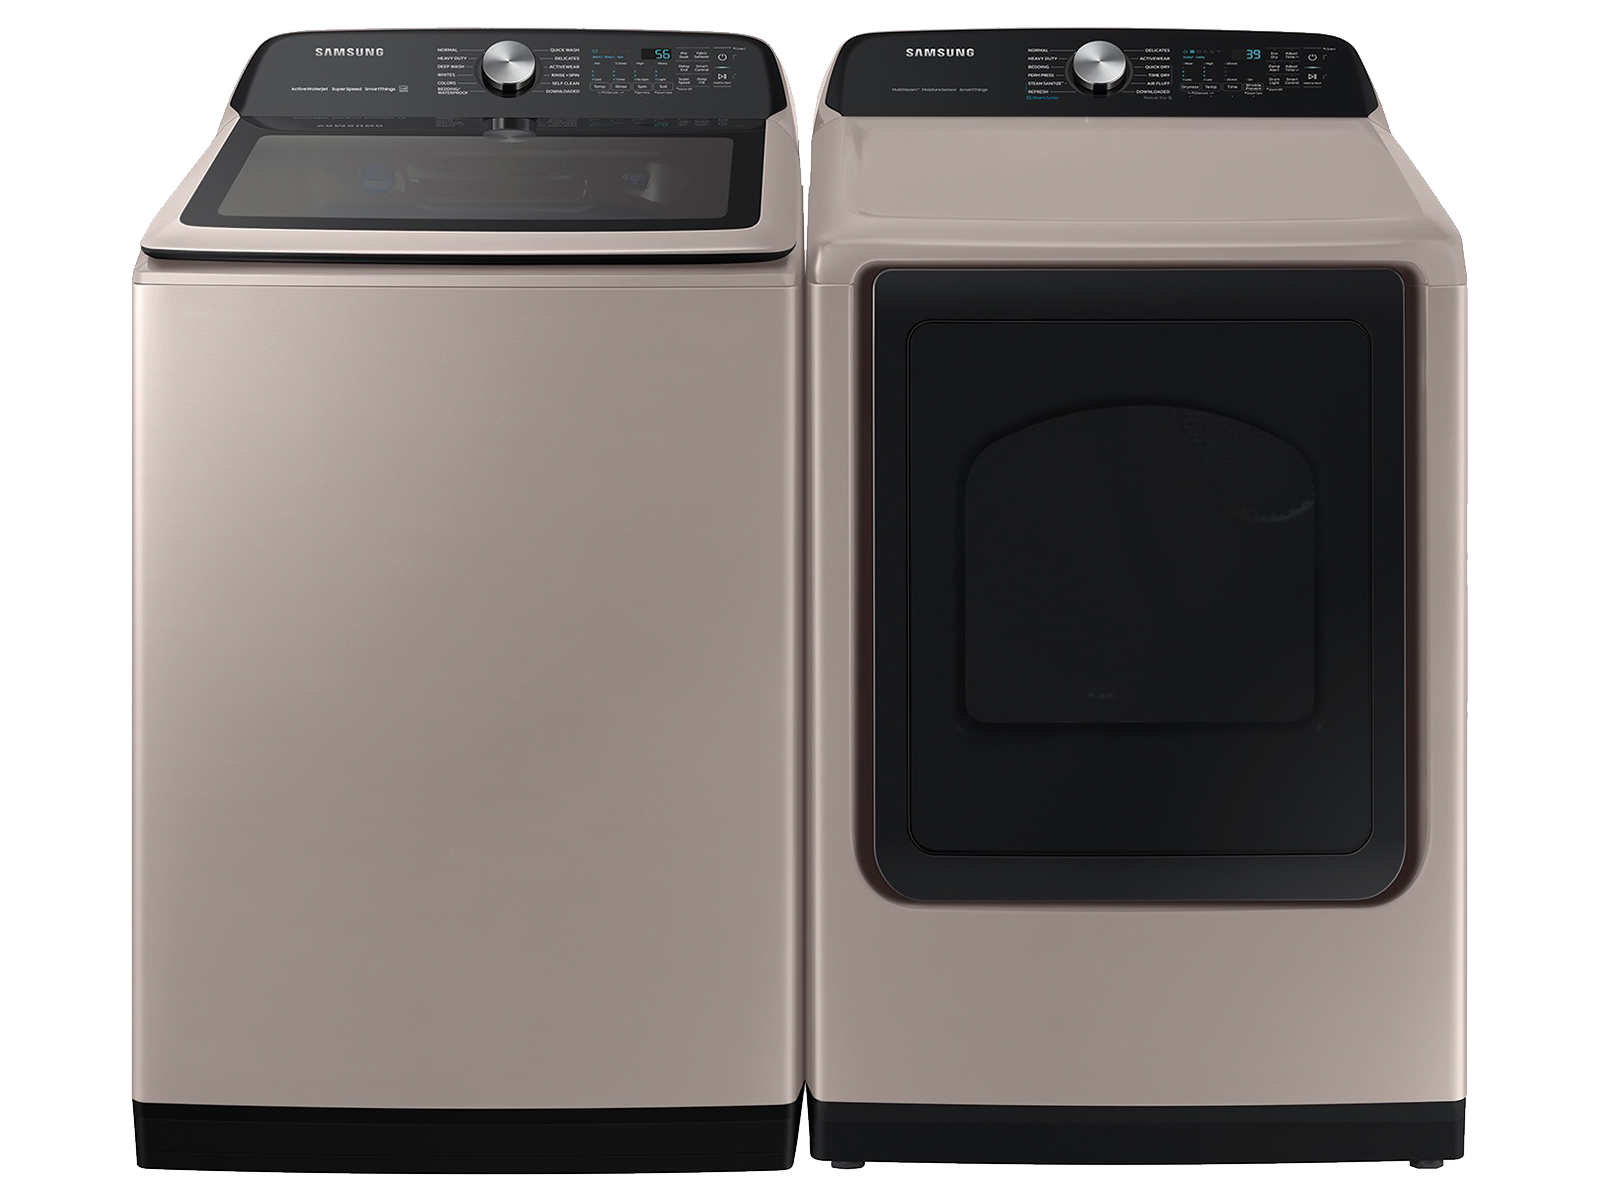 Photos - Washing Machine Samsung Smart Top Load Super Speed Wash Washer and Smart Steam Sanitize+ G 